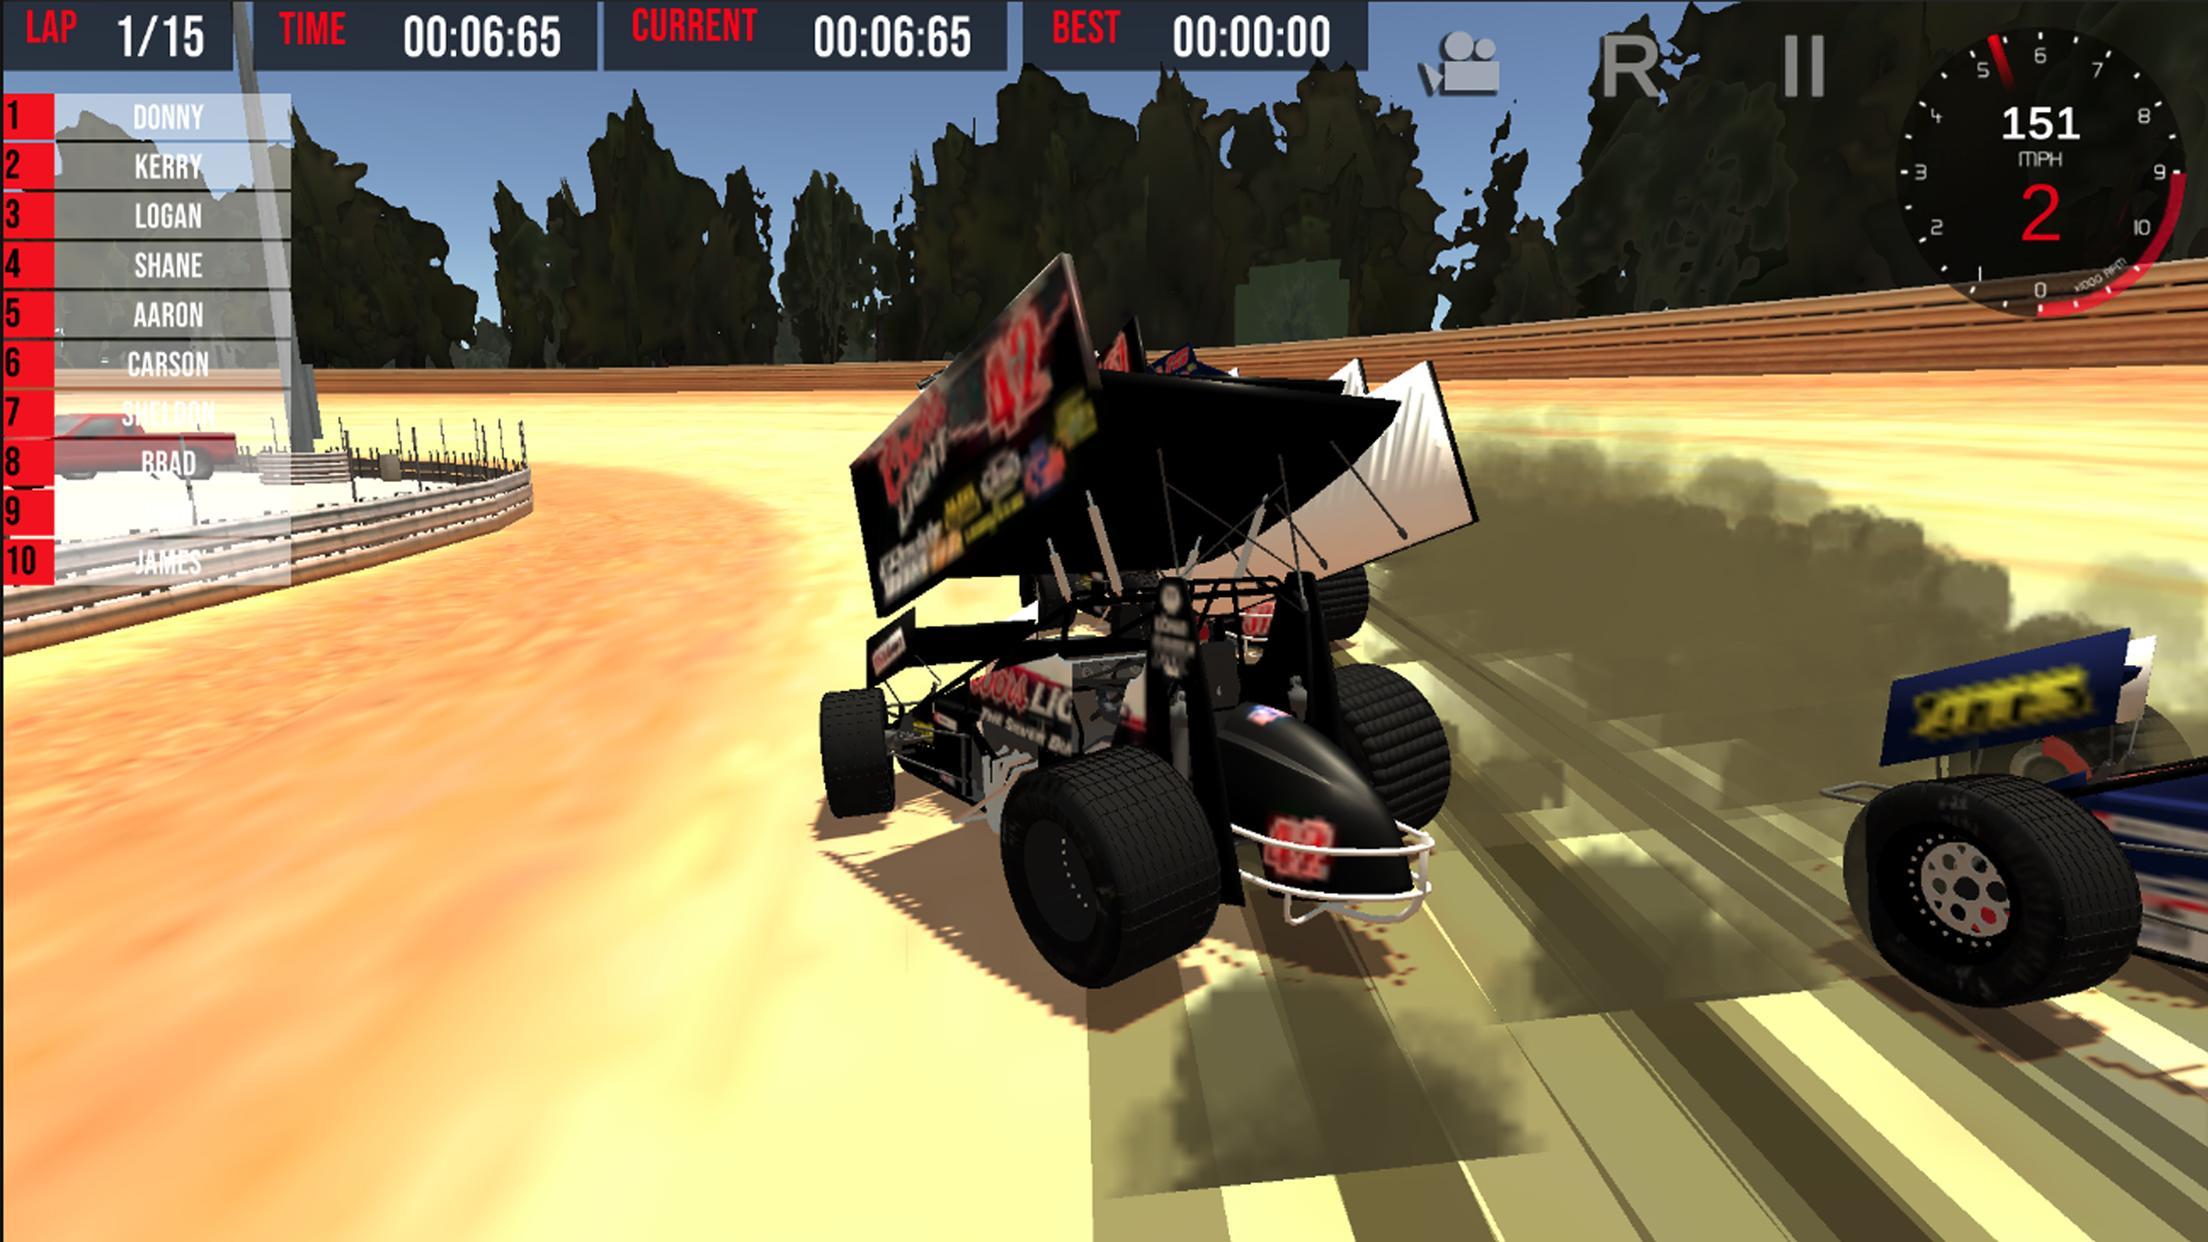 Кар хигвей рейсинг. Sprint car Racing track. Outlaw Driver Simulator. Dirt track Racing: Sprint cars 2.